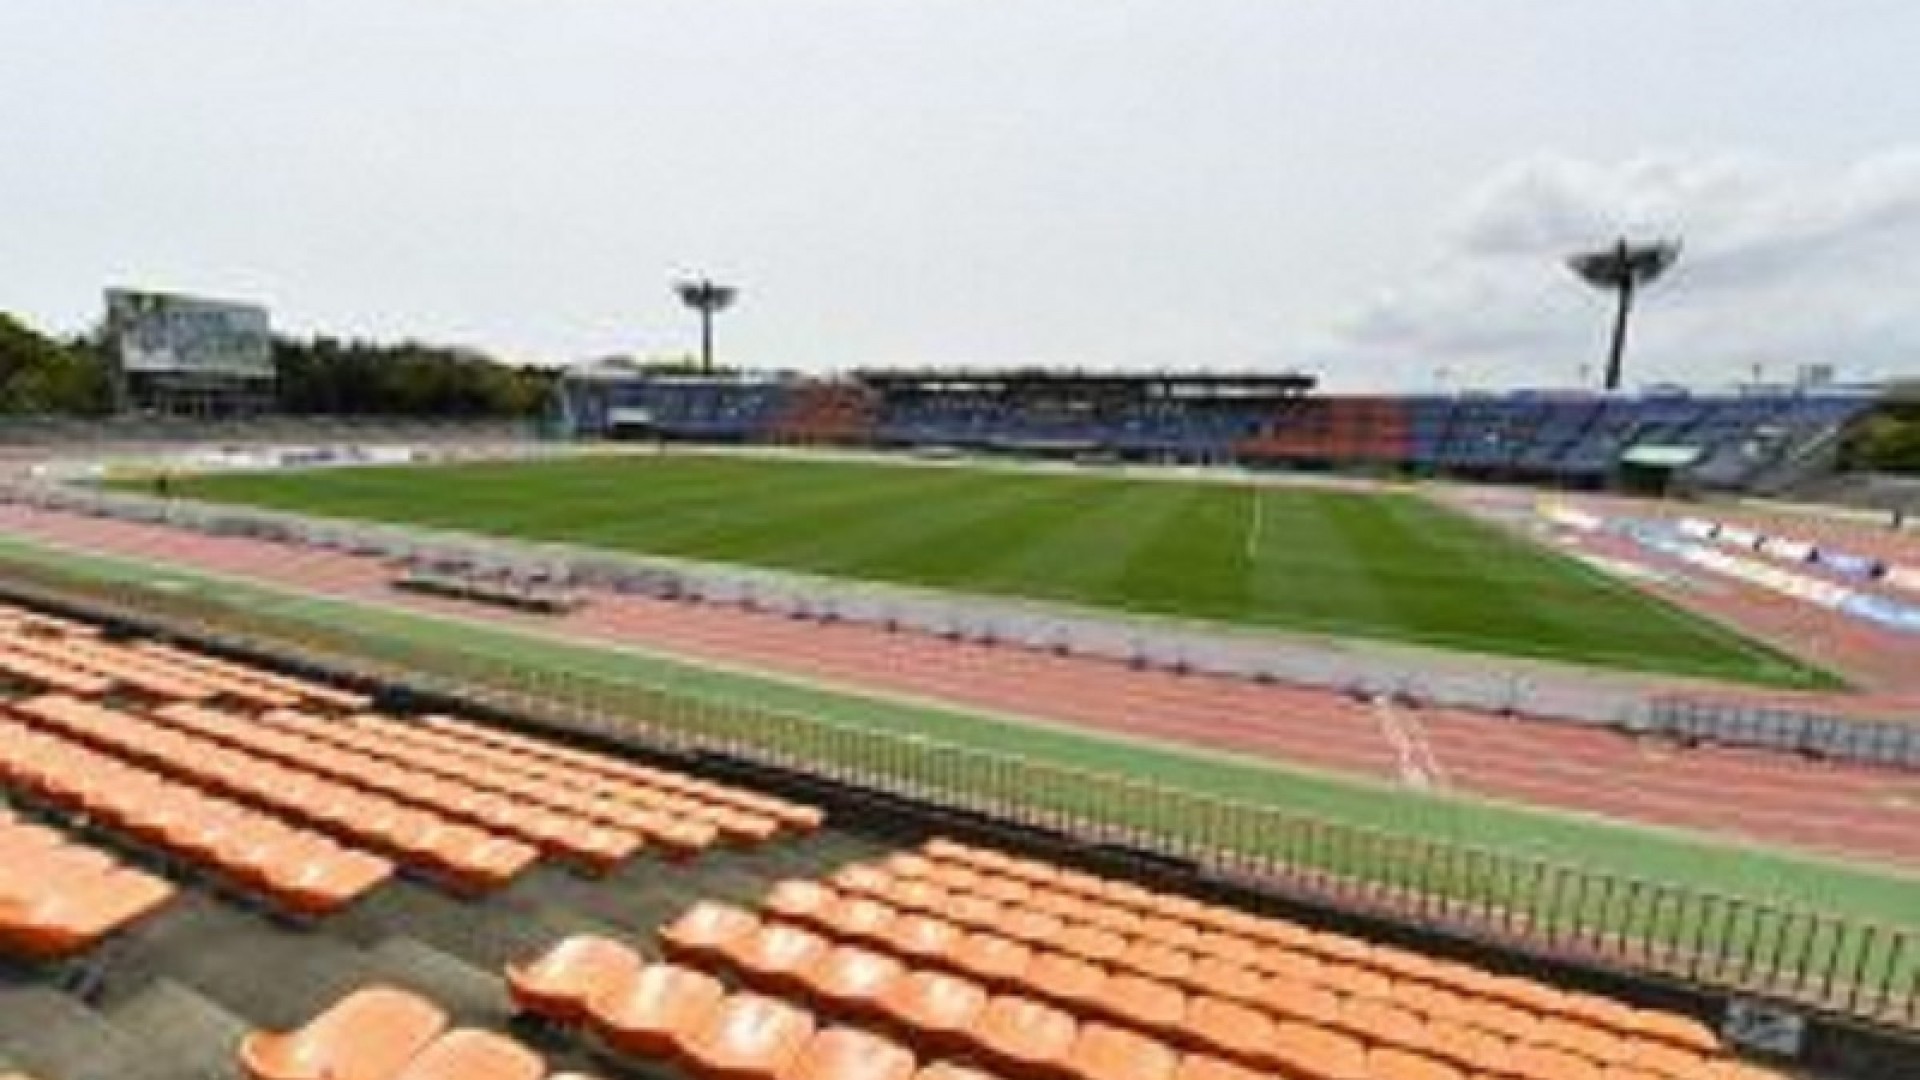 Shonan Lemon Gas Stadium Hiratsuka (Hiratsuka Stadium)